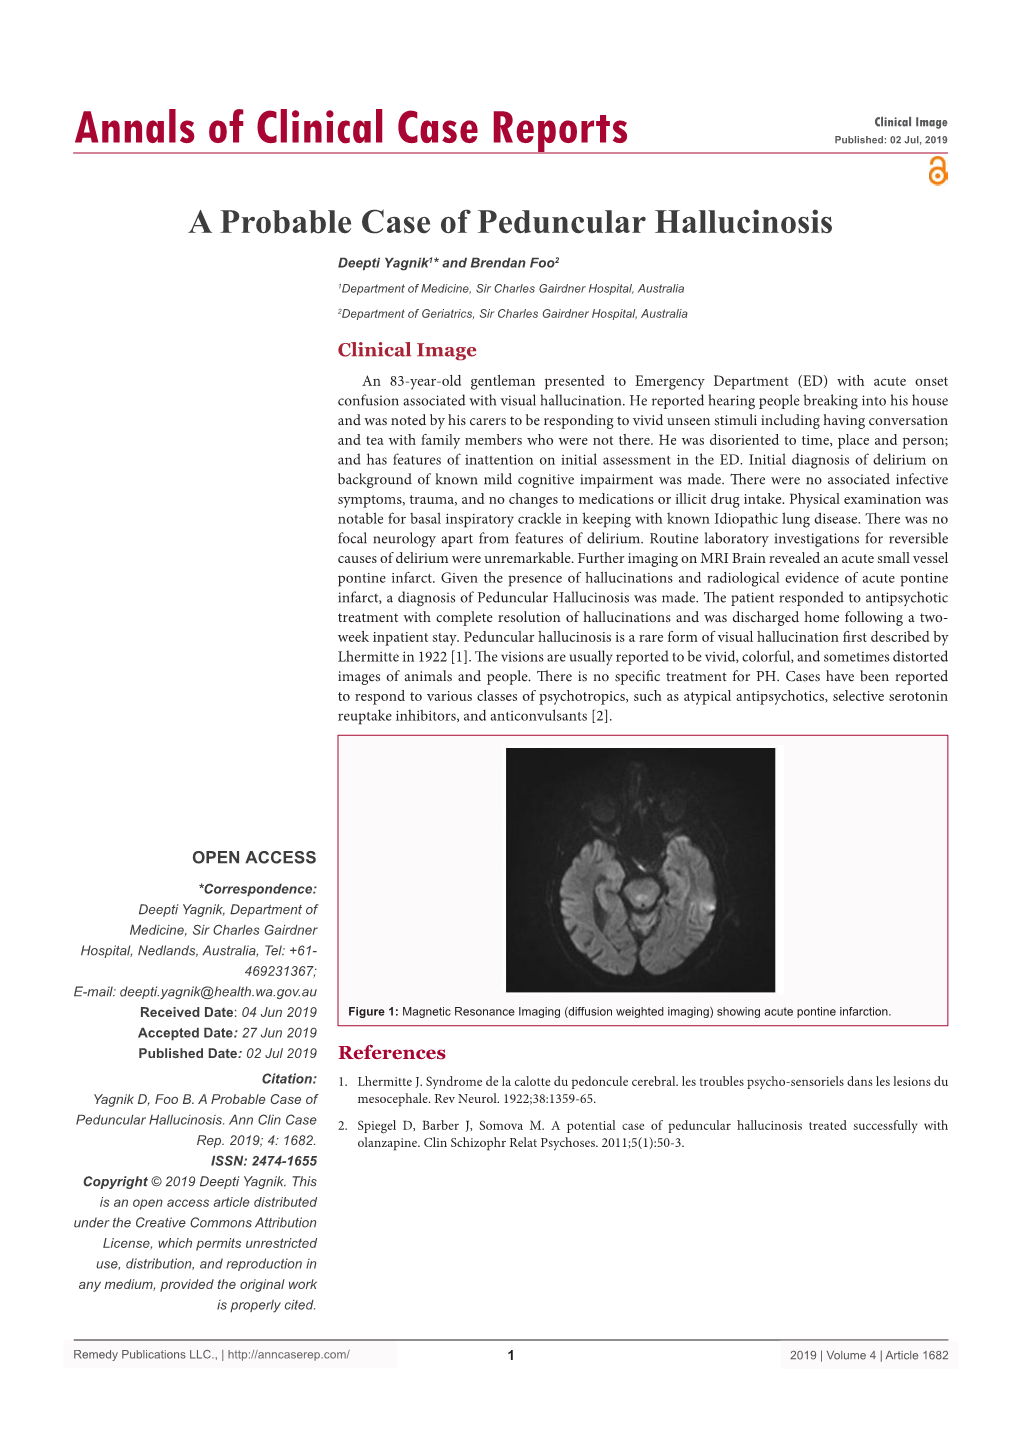 A Probable Case of Peduncular Hallucinosis